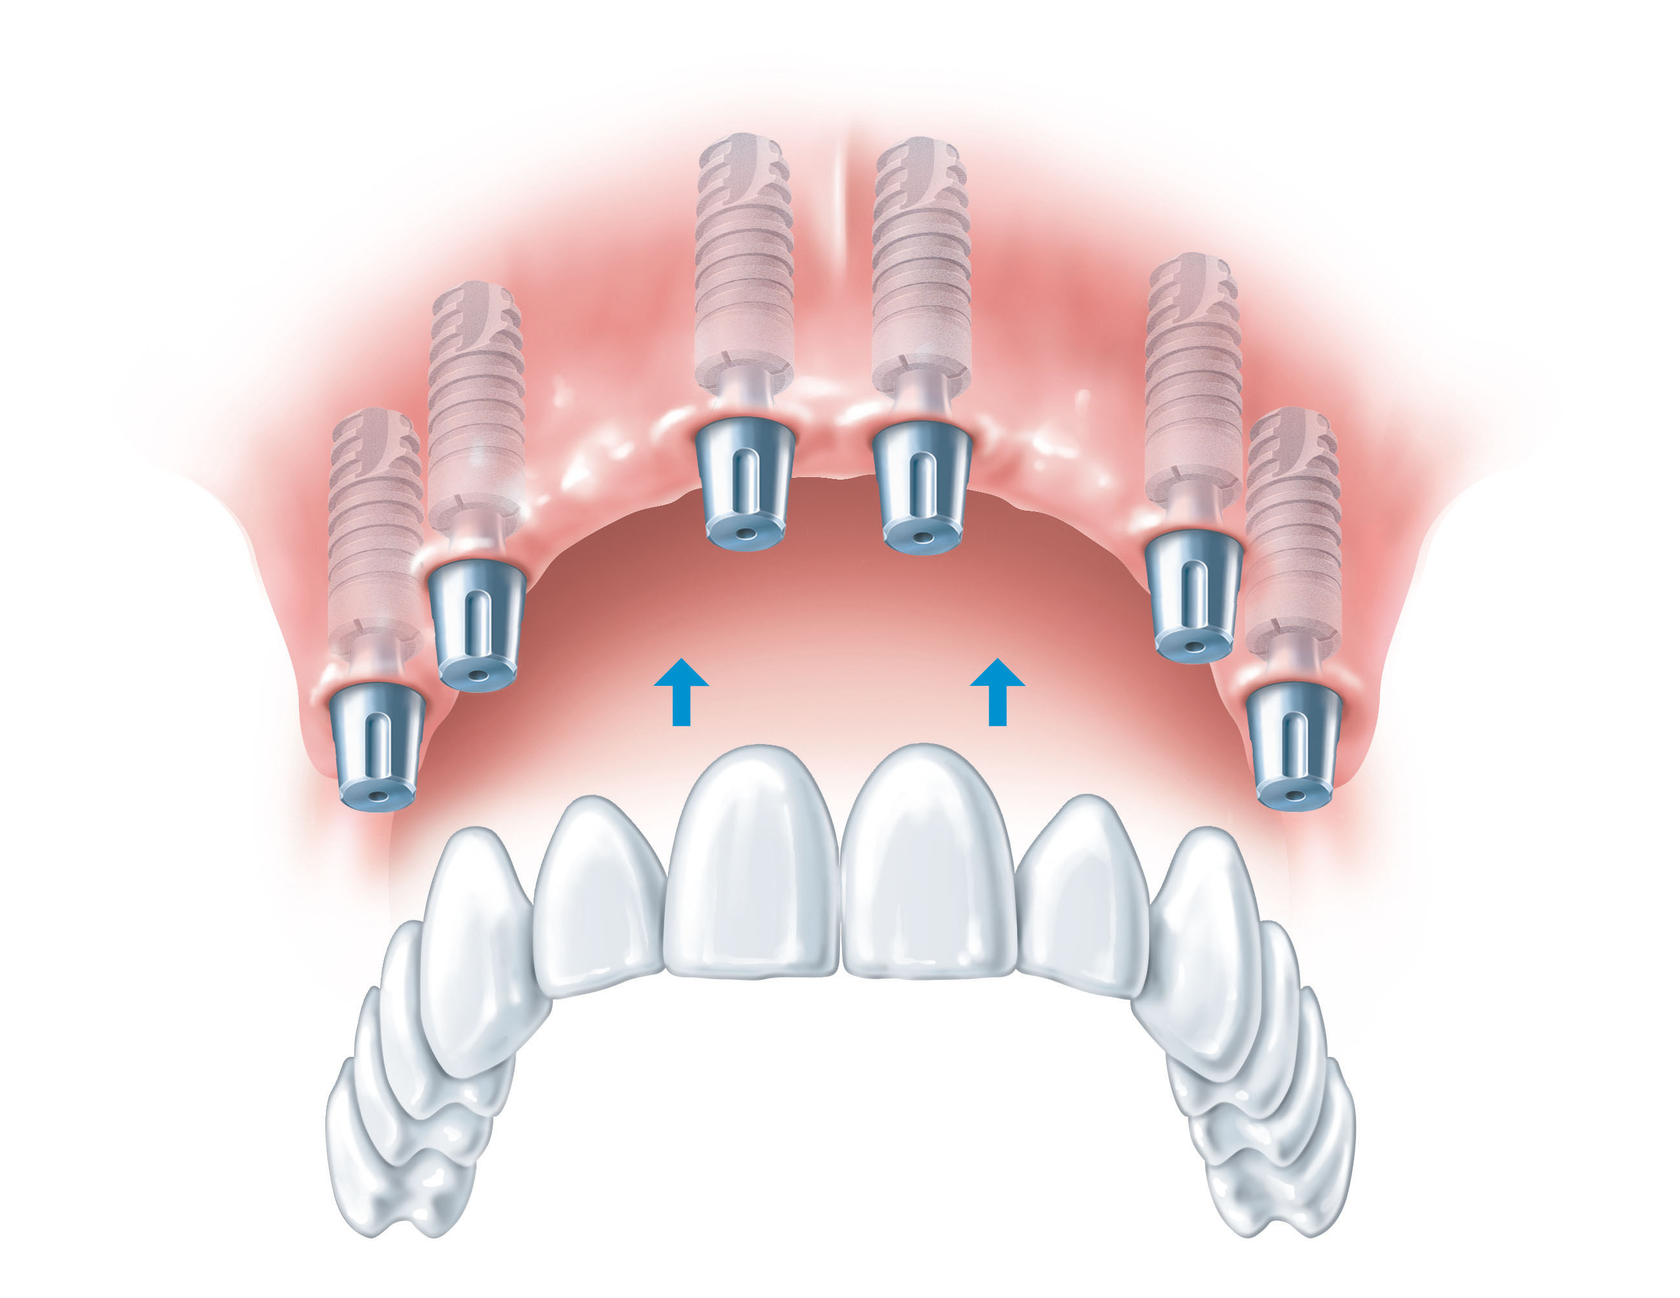 Имплантация зубов all on 6. Имплантация зубов на 6 имплантах верхней челюсти. Несъемный протез на 6 имплантах. Протез на 6 имплантах на верхнюю челюсть. Имплантация верхней челюсти на 6 имплантах схема.